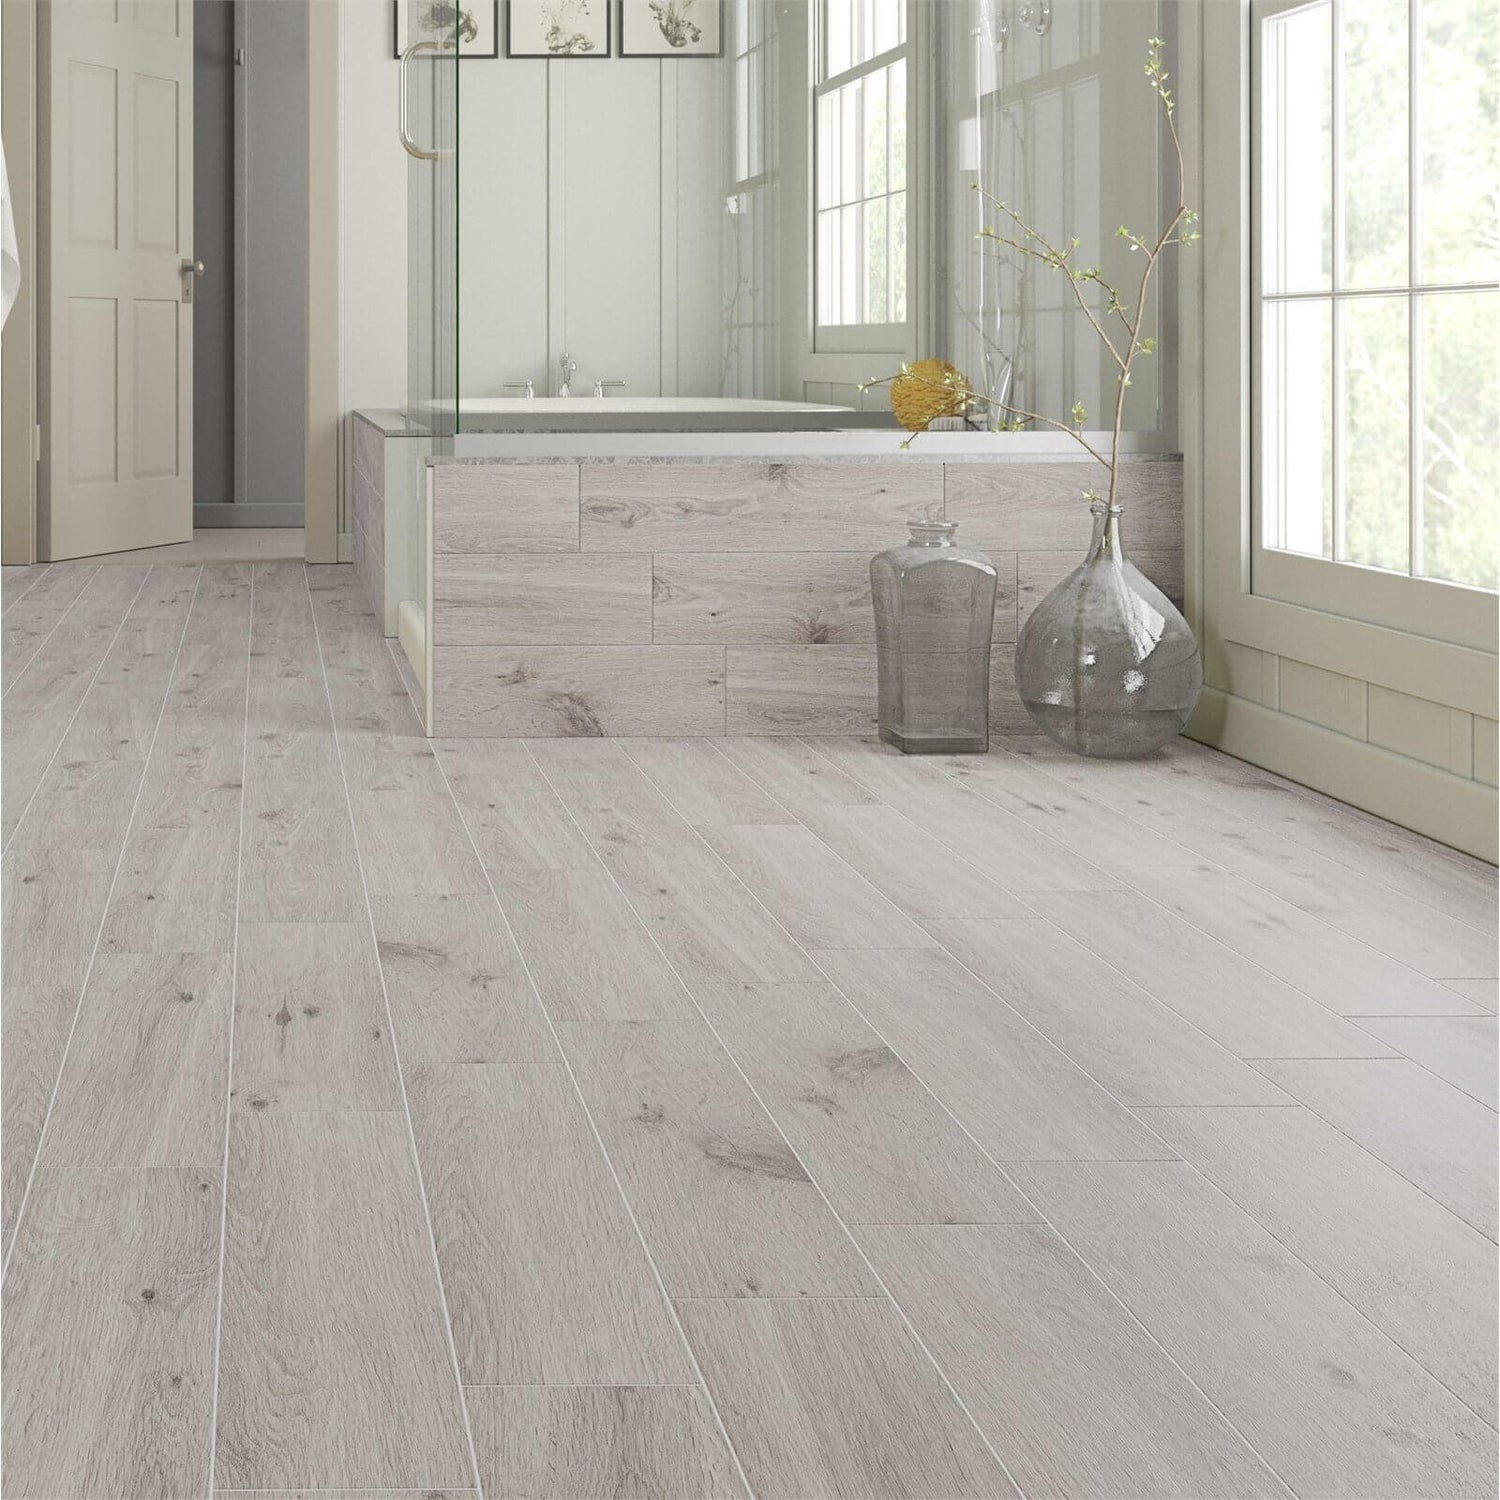 Forestina Wood Effect Grey Floor Tiles, Grey Vinyl Floor Tiles Homebase